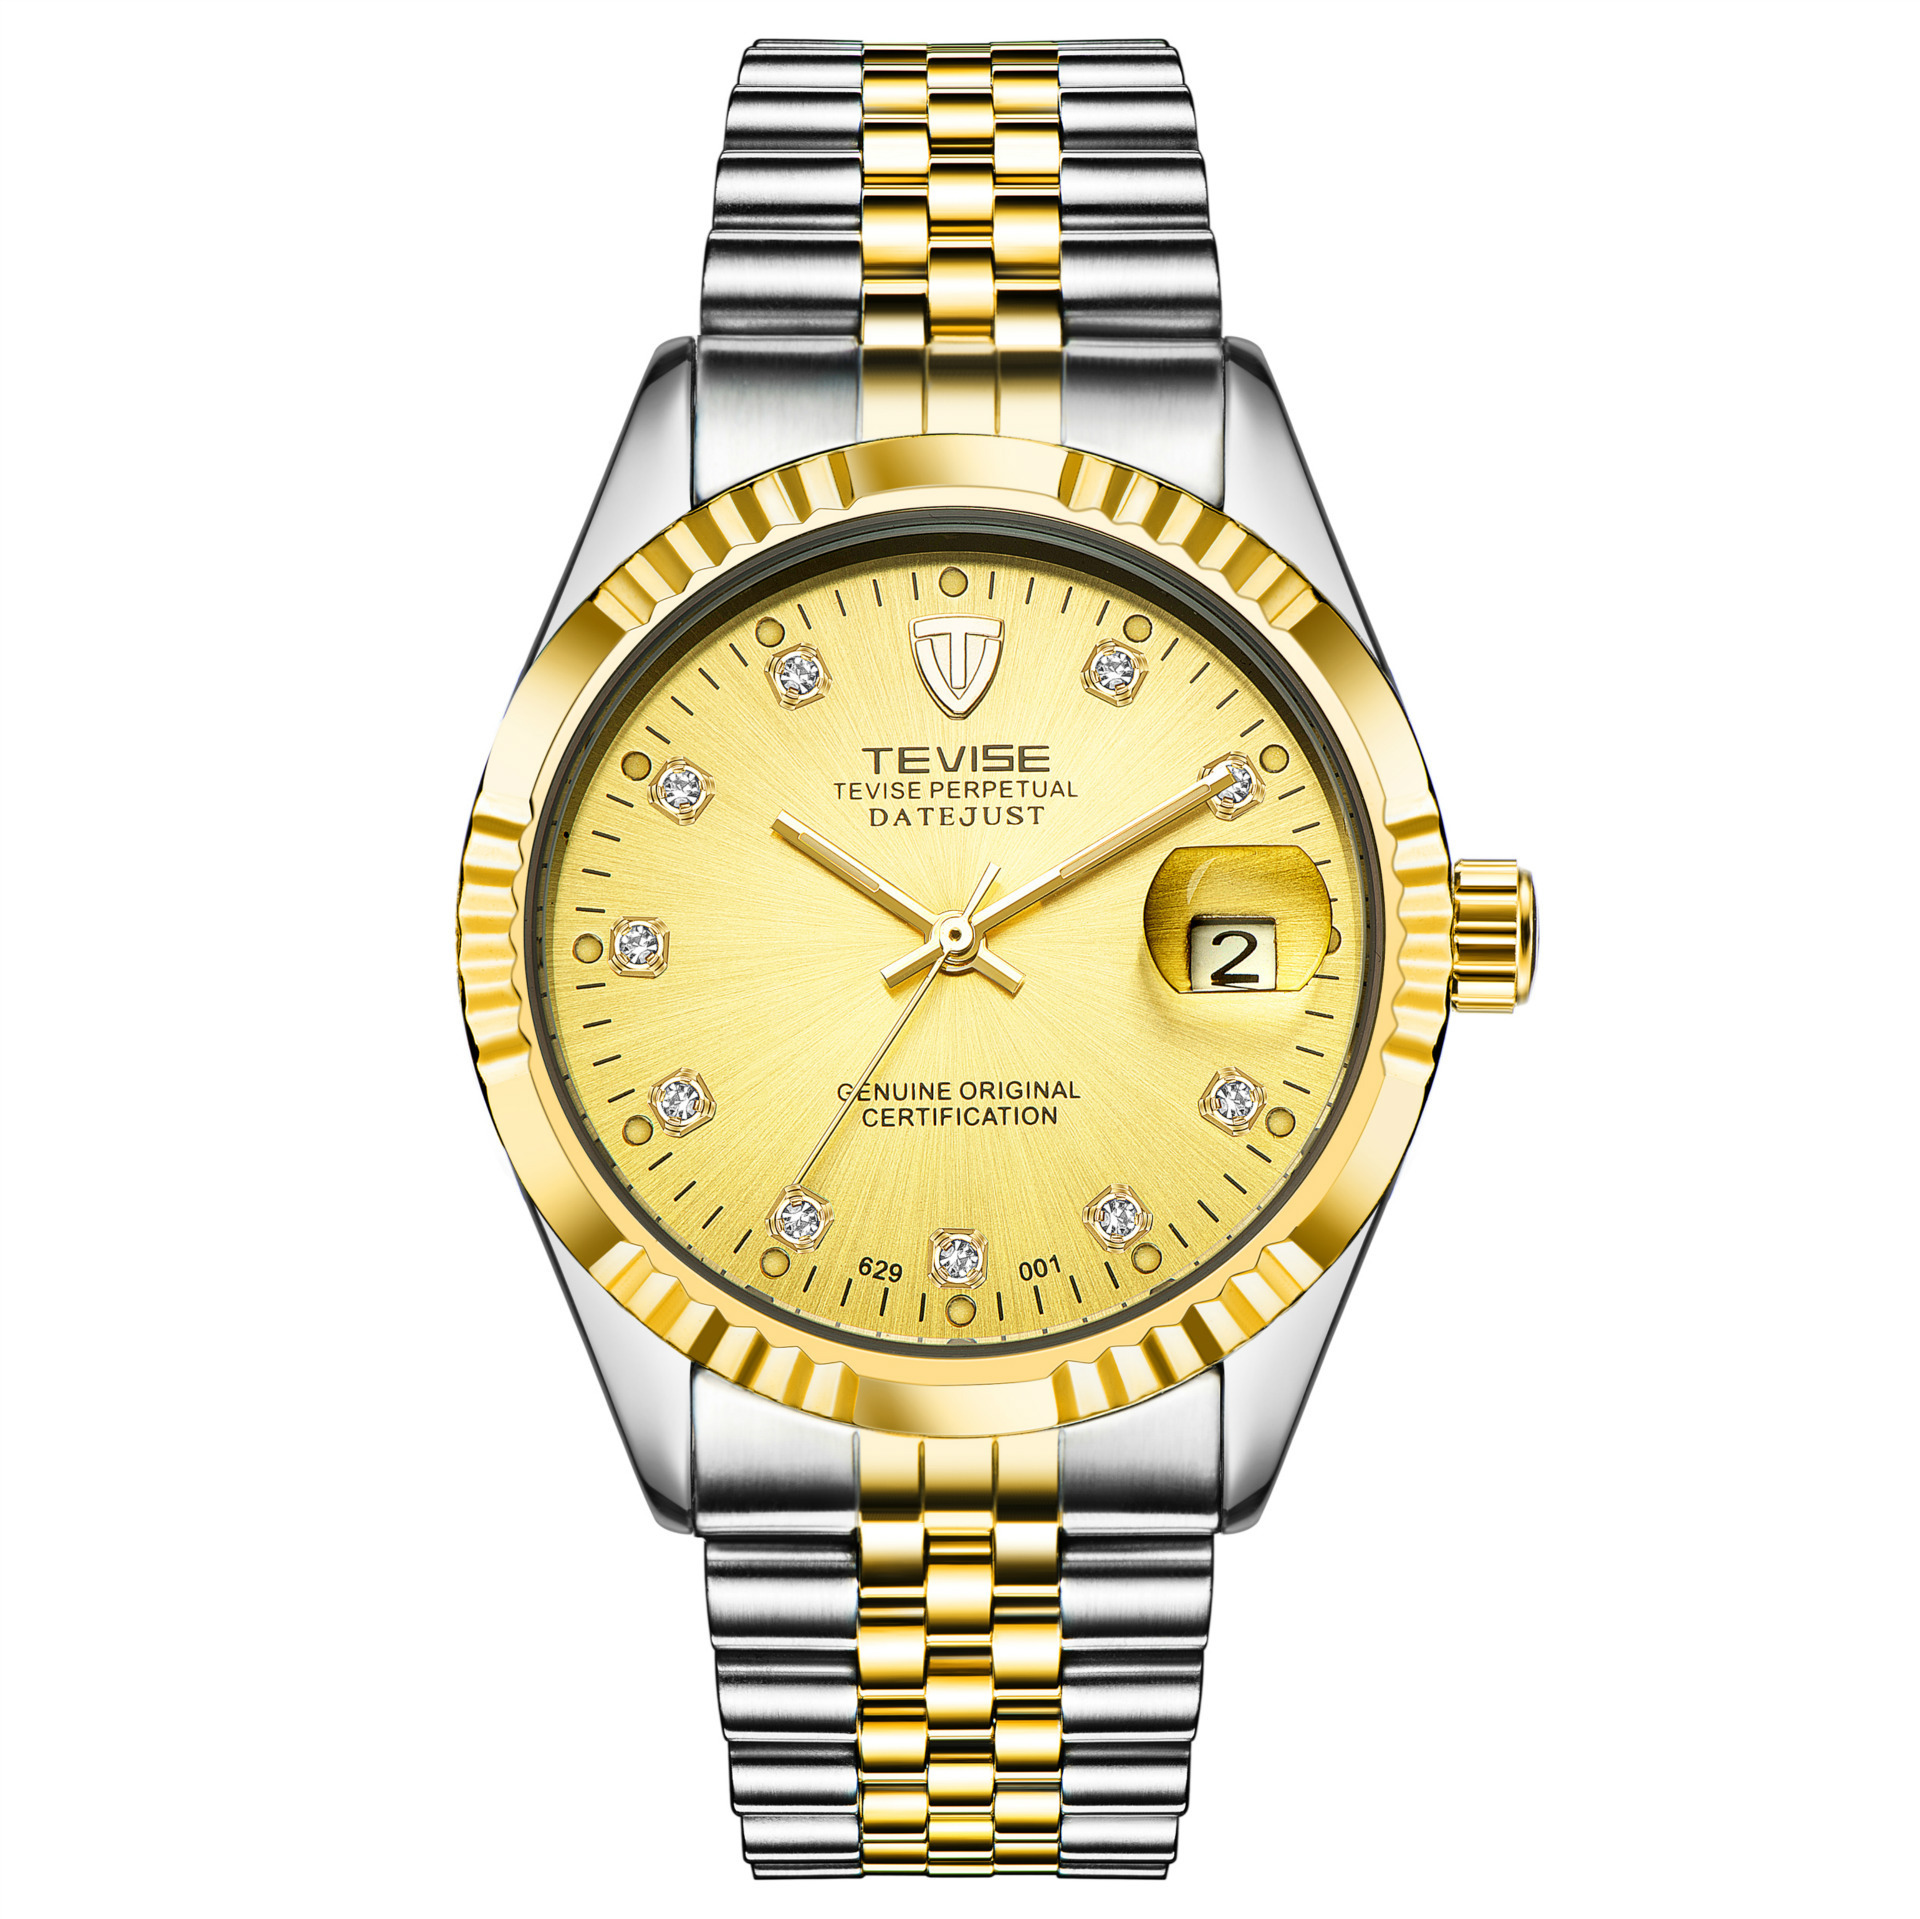 TEVISE/Twiss 629 Calendar Mechanical Men's Business Watch Watch Automatic Mechanical Watch